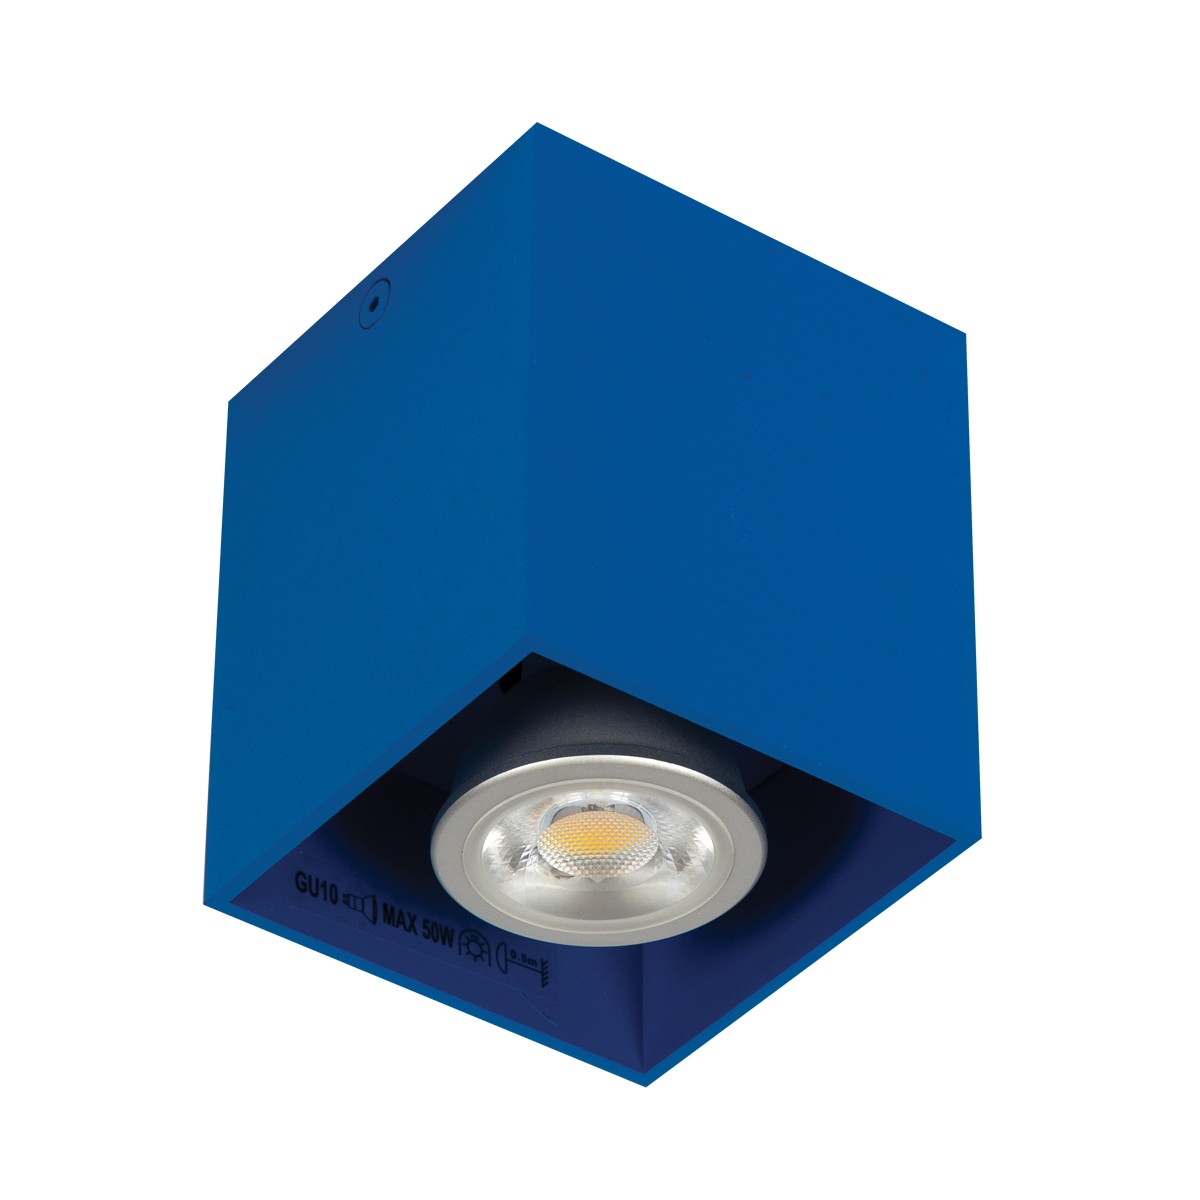 Φωτιστικό αλουμινίου οροφής κύβος  GU10 max 35W μπλε σκούρο 82χ82χ95 VK/03001/DB